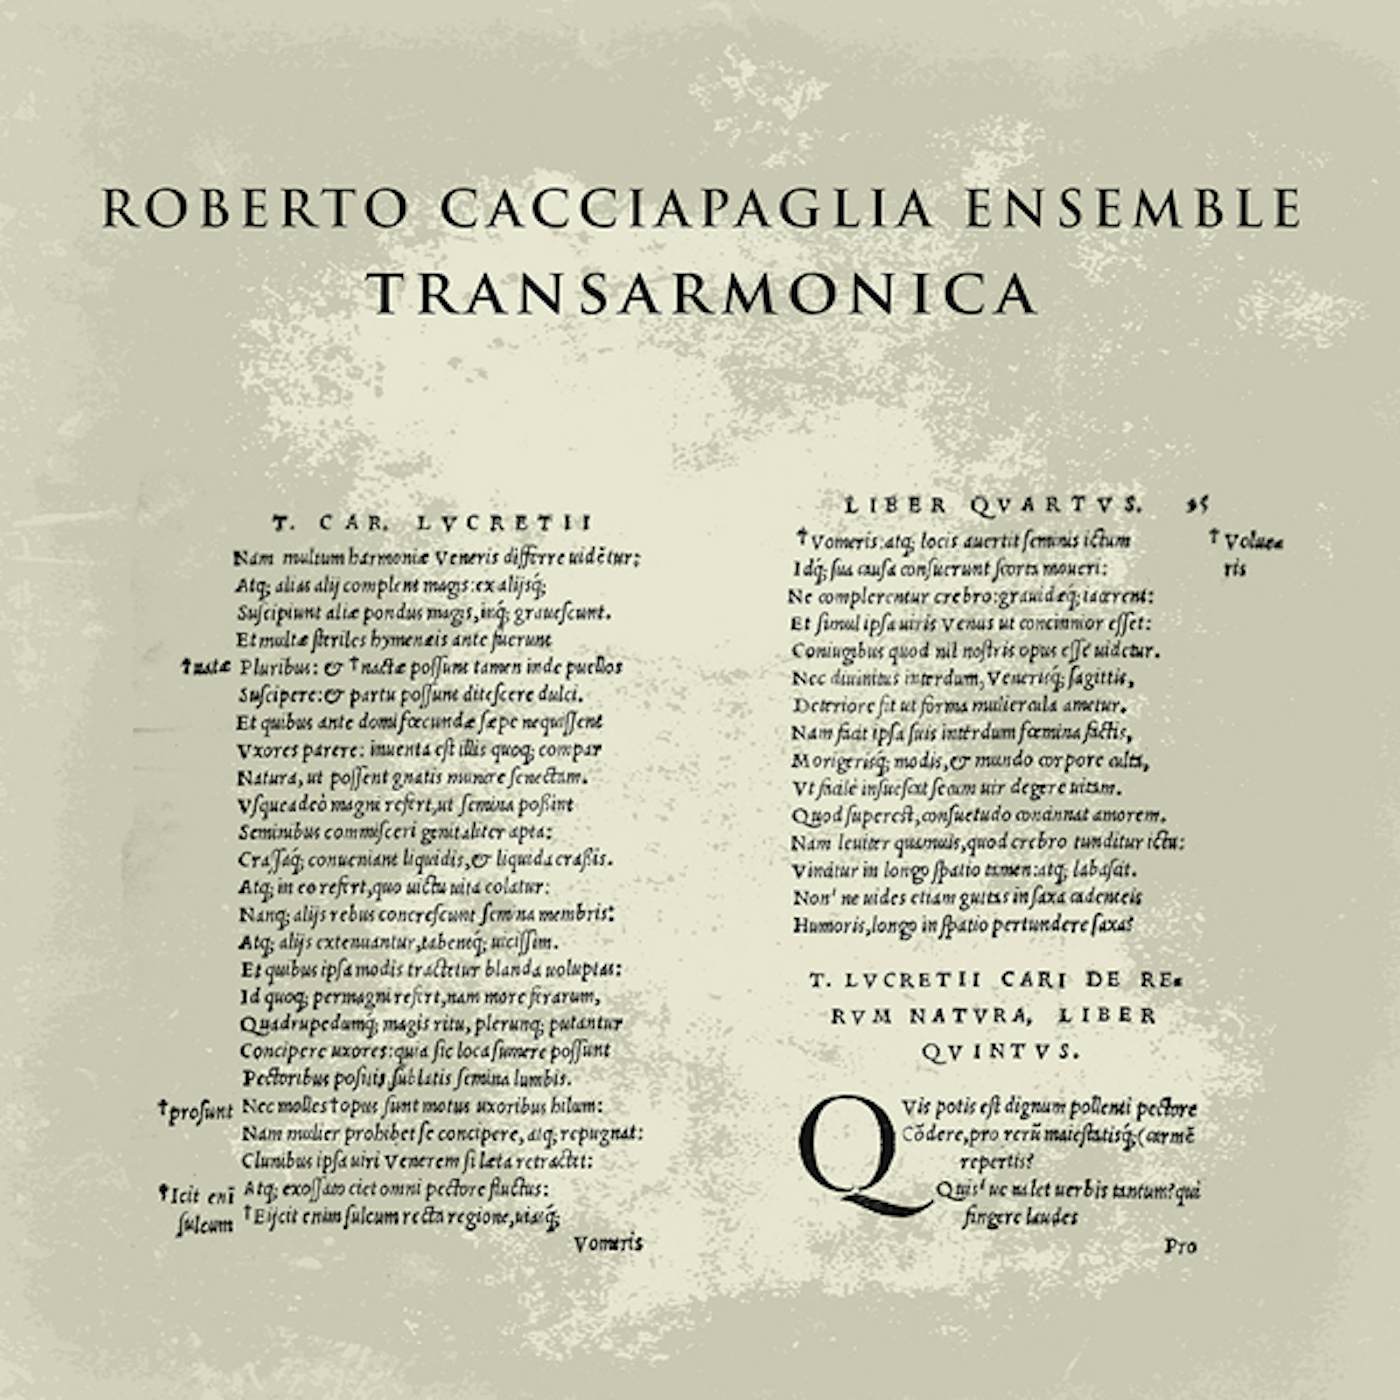 Roberto Cacciapaglia TRANSARMONICA CD